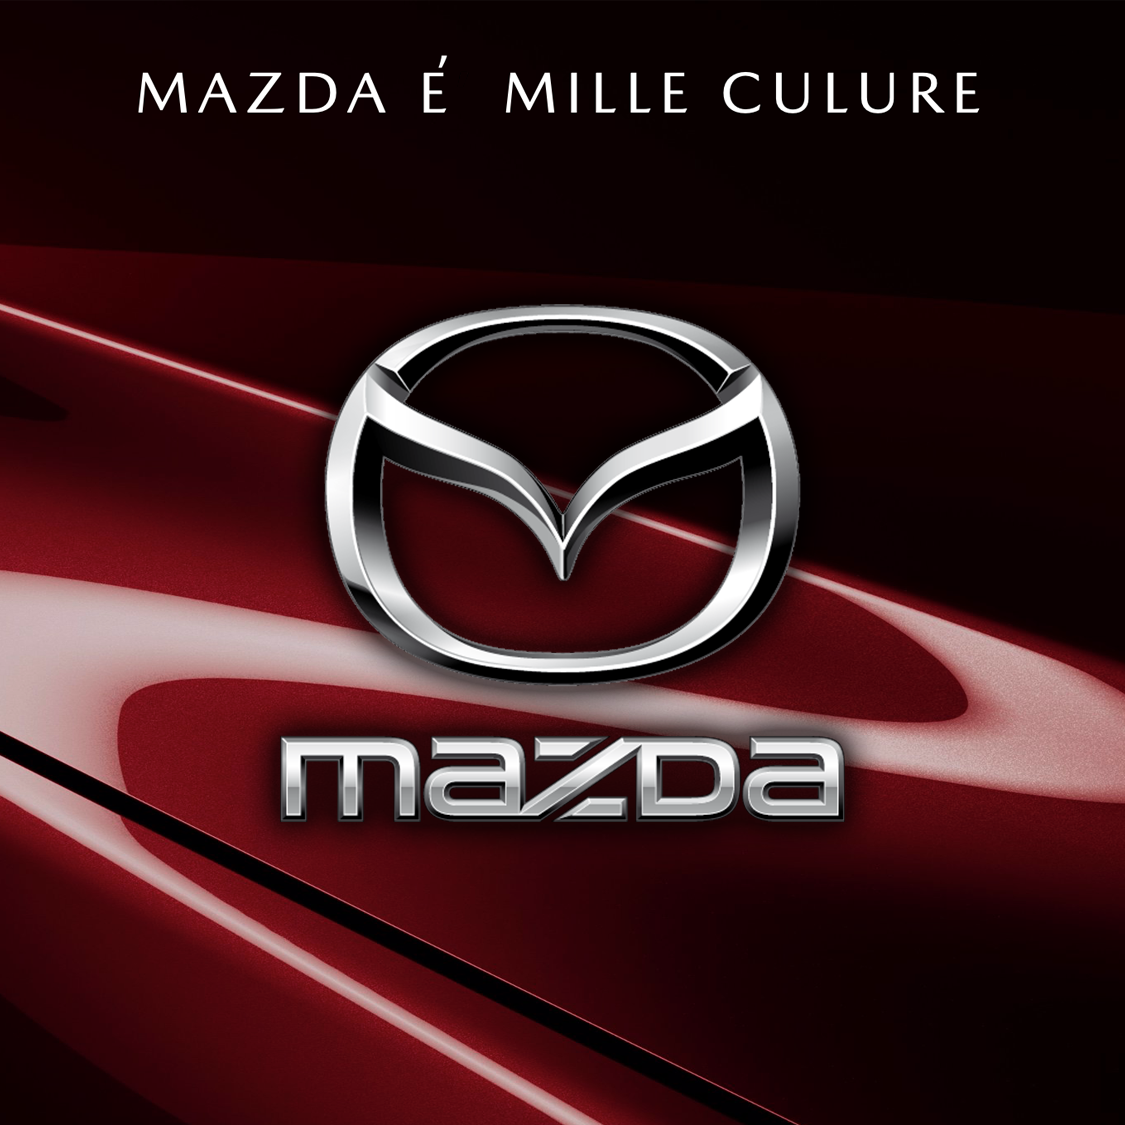 dealer meeting Mazda